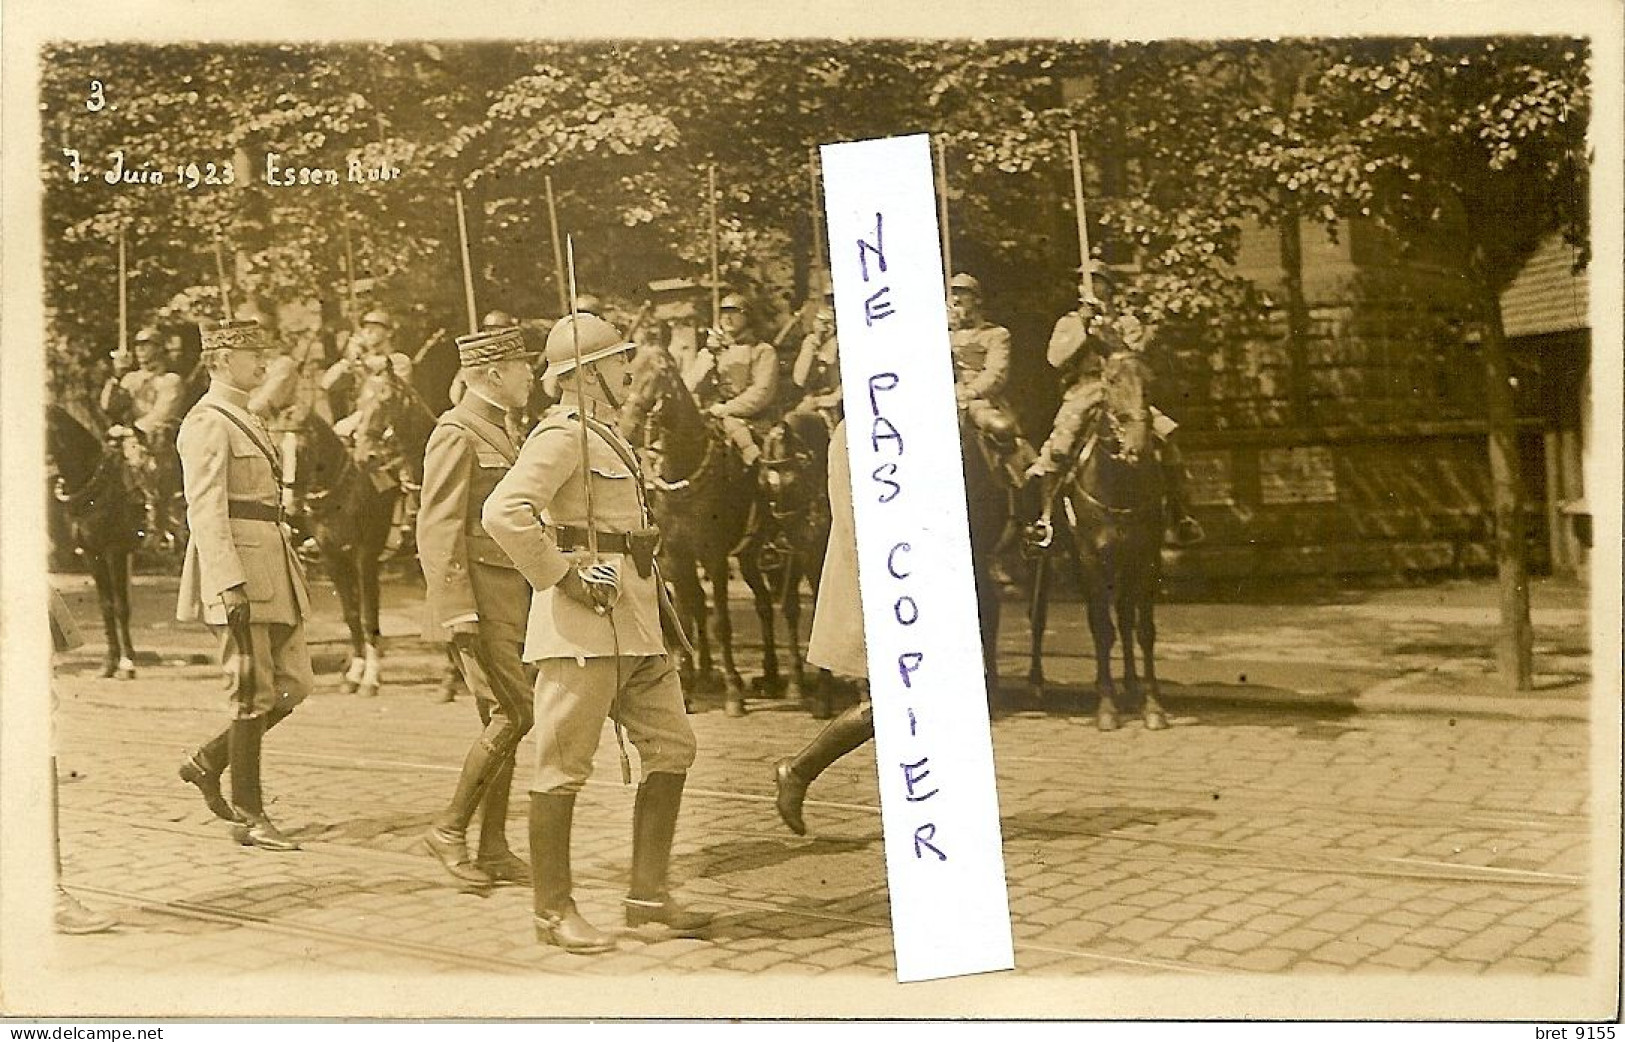 CARTE PHOTO ALLEMAGNE ESSEN RUHR OCCUPEE PAR LA FRANCE 7 JUIN 1923 SERIE DE 10 PHOTOS EXCEPTIONELLEMENT RARES - Essen